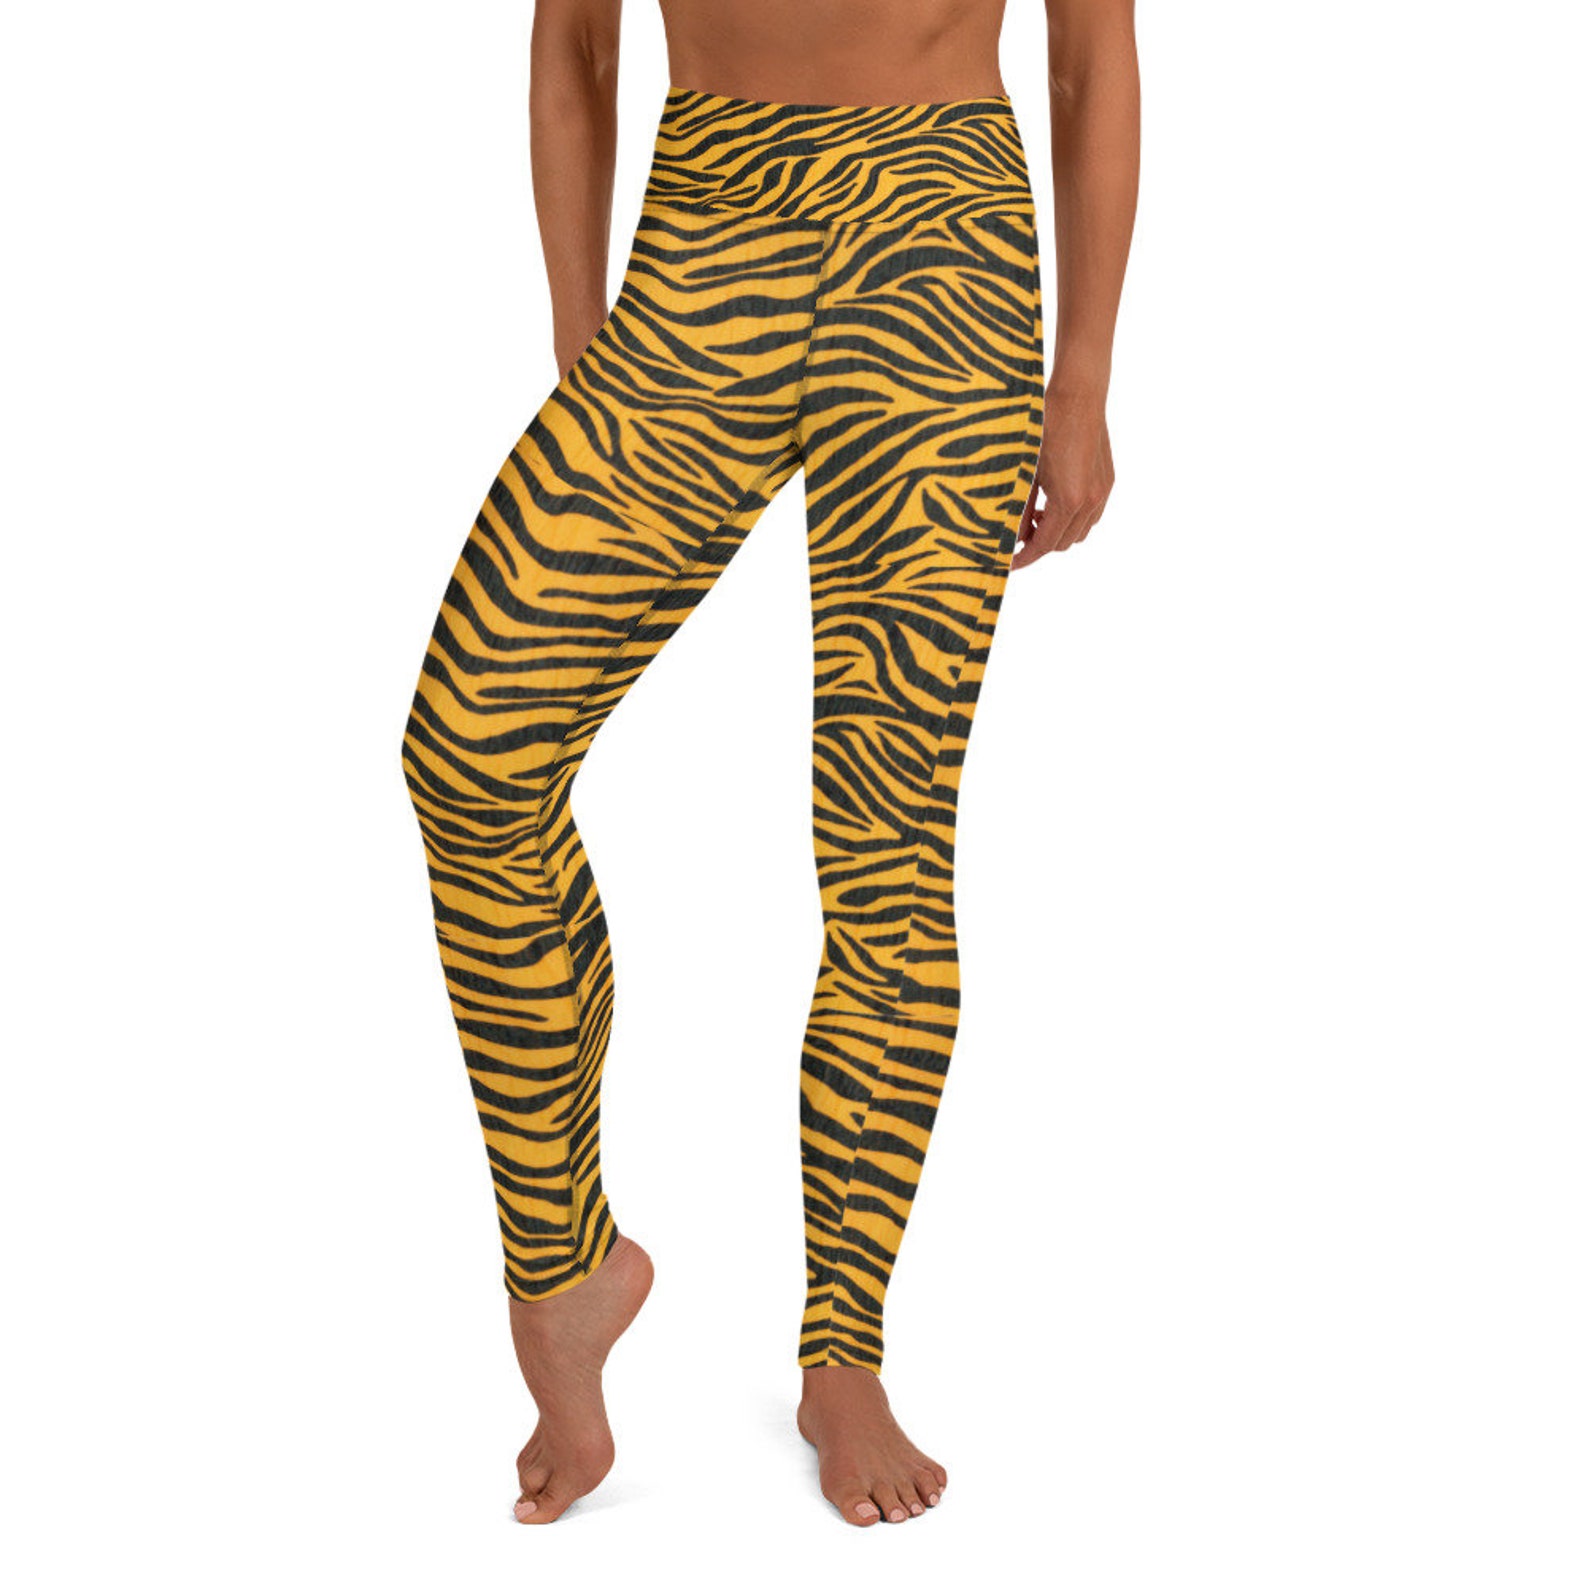 Zebra Yoga Leggings orange and black flattering trendy | Etsy